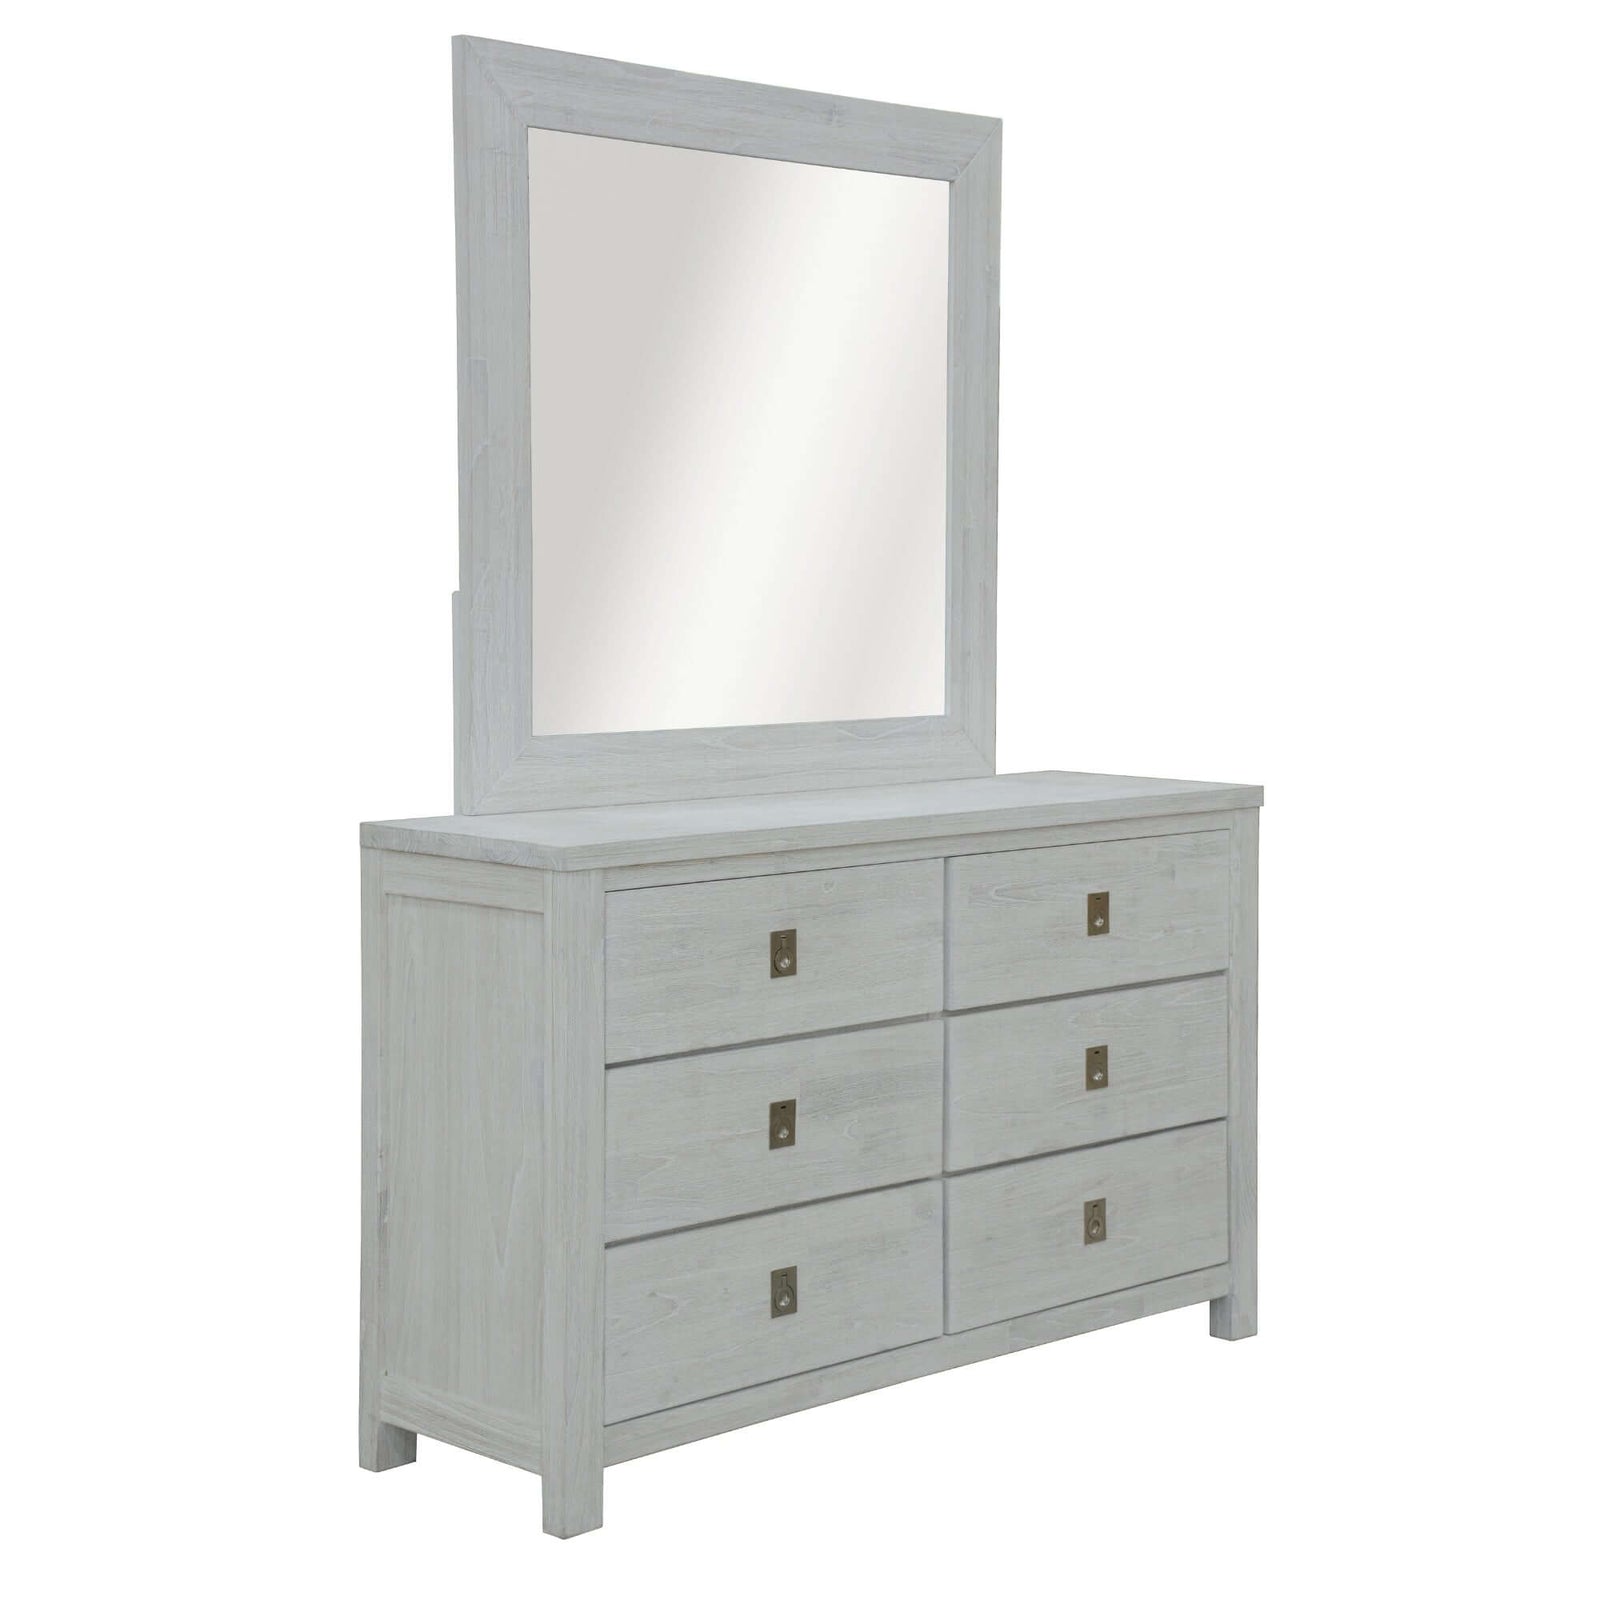 Myer Dresser Mirror 6 Chest of Drawers Tallboy Storage Cabinet White Wash-Upinteriors